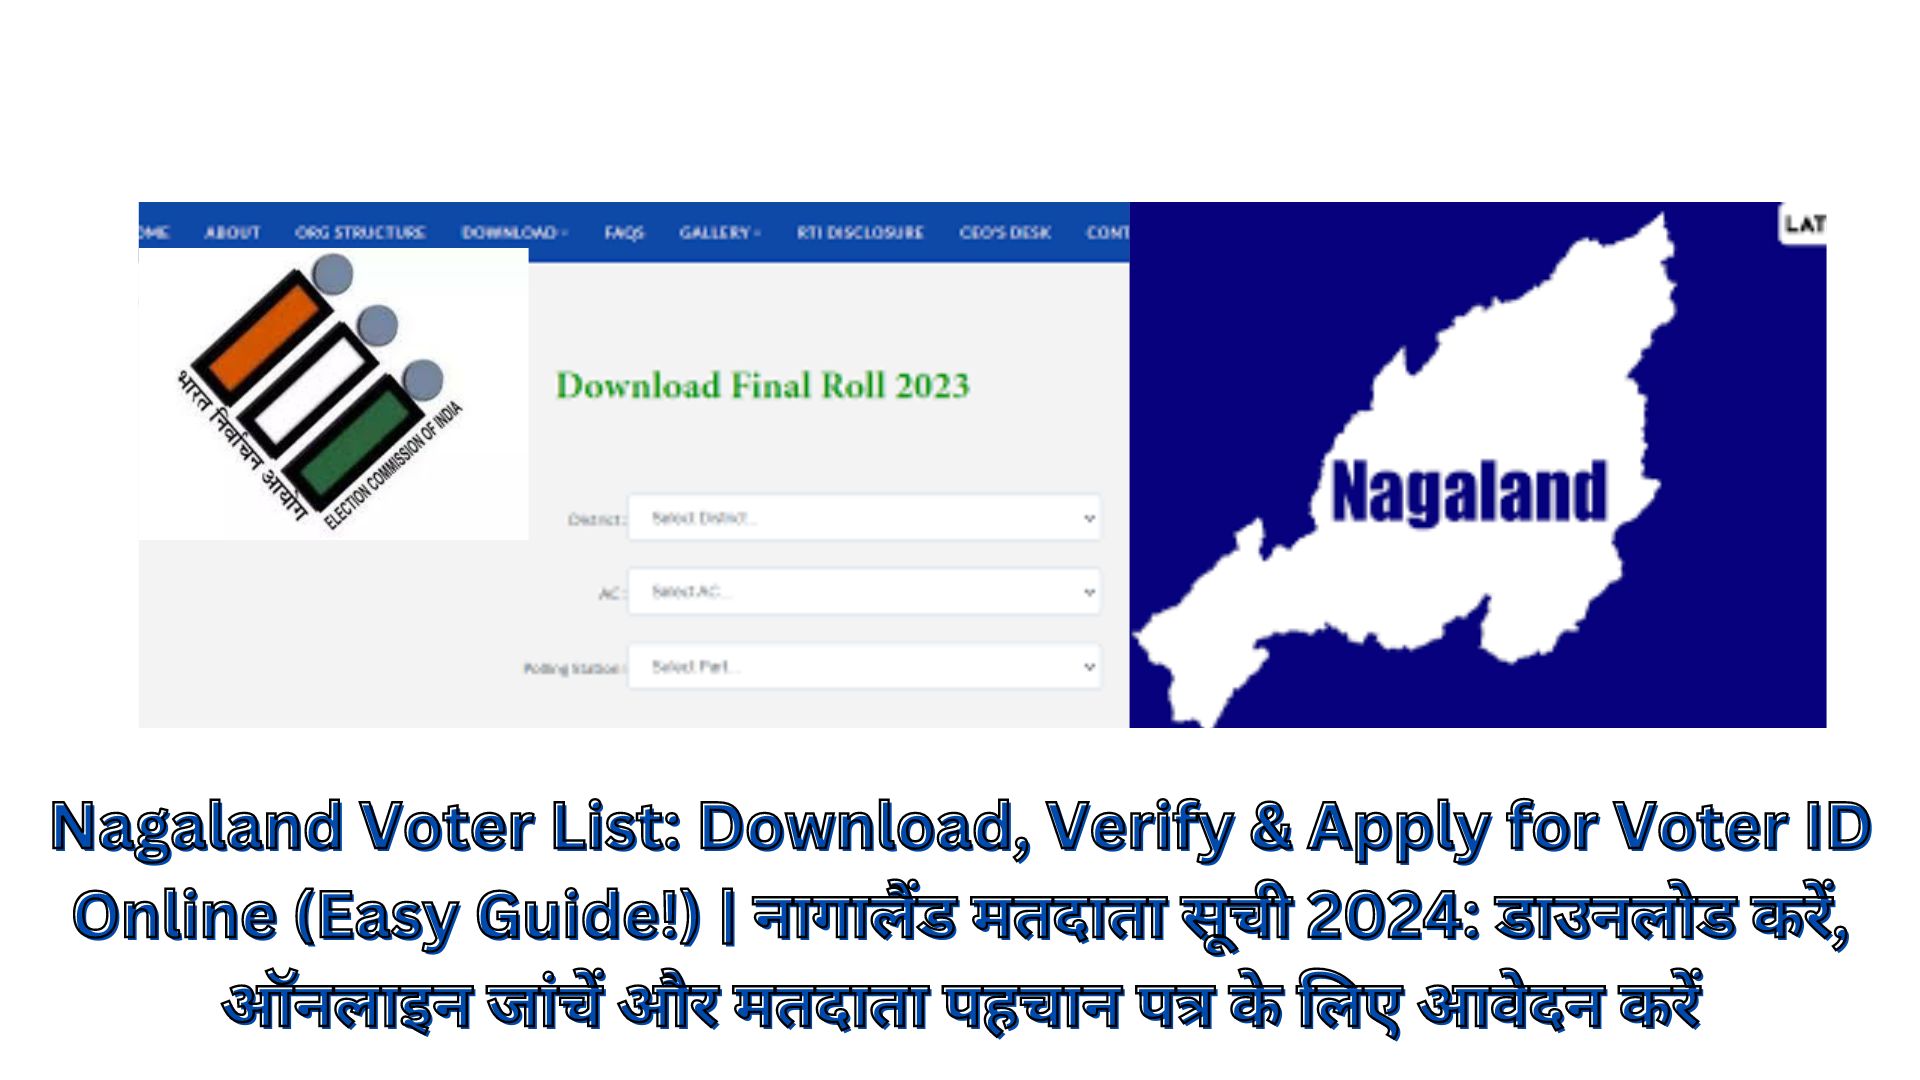 Nagaland Voter List: Download, Verify & Apply for Voter ID Online (Easy Guide!) | नागालैंड मतदाता सूची 2024: डाउनलोड करें, ऑनलाइन जांचें और मतदाता पहचान पत्र के लिए आवेदन करें